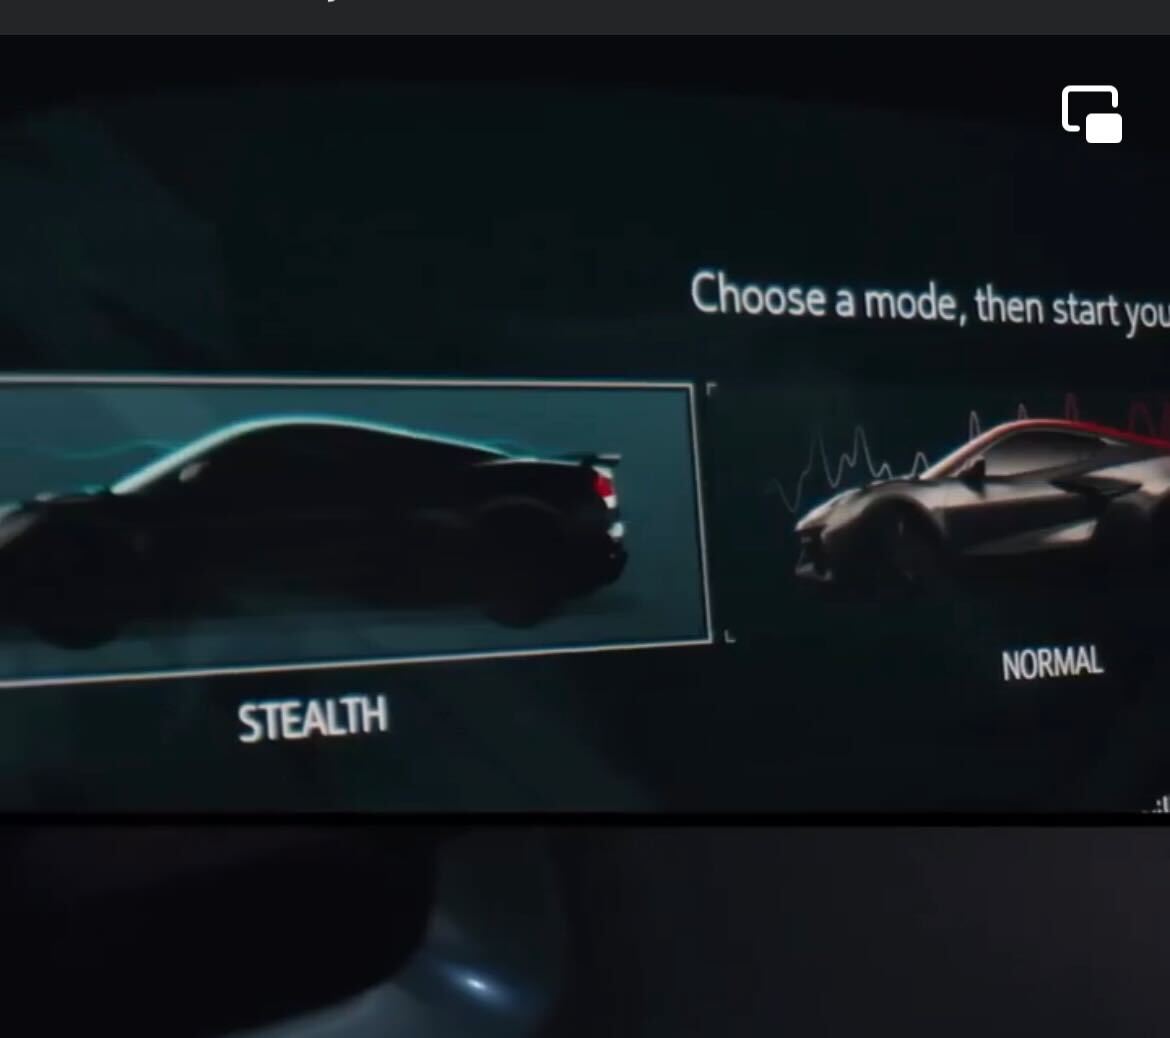 Stealth mode shown in the new Corvette E-Ray